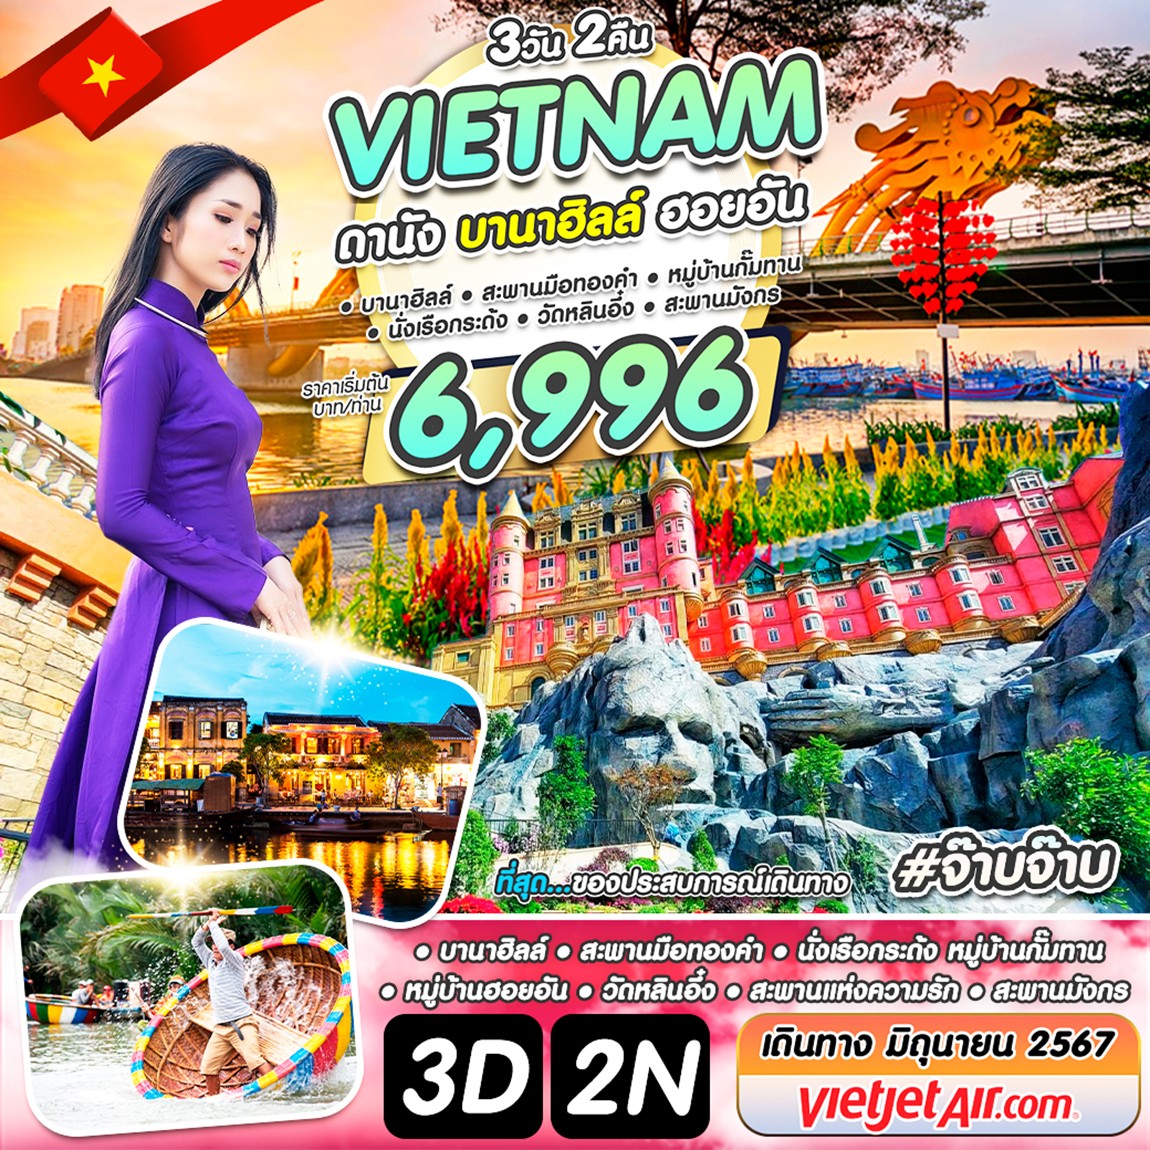 เวียดนาม ดานัง บานาฮิลล์ ฮอยอัน #จ๊าบจ๊าบ 3 วัน 2 คืน มิ.ย. 67 by Vietjet Air (ปิด)